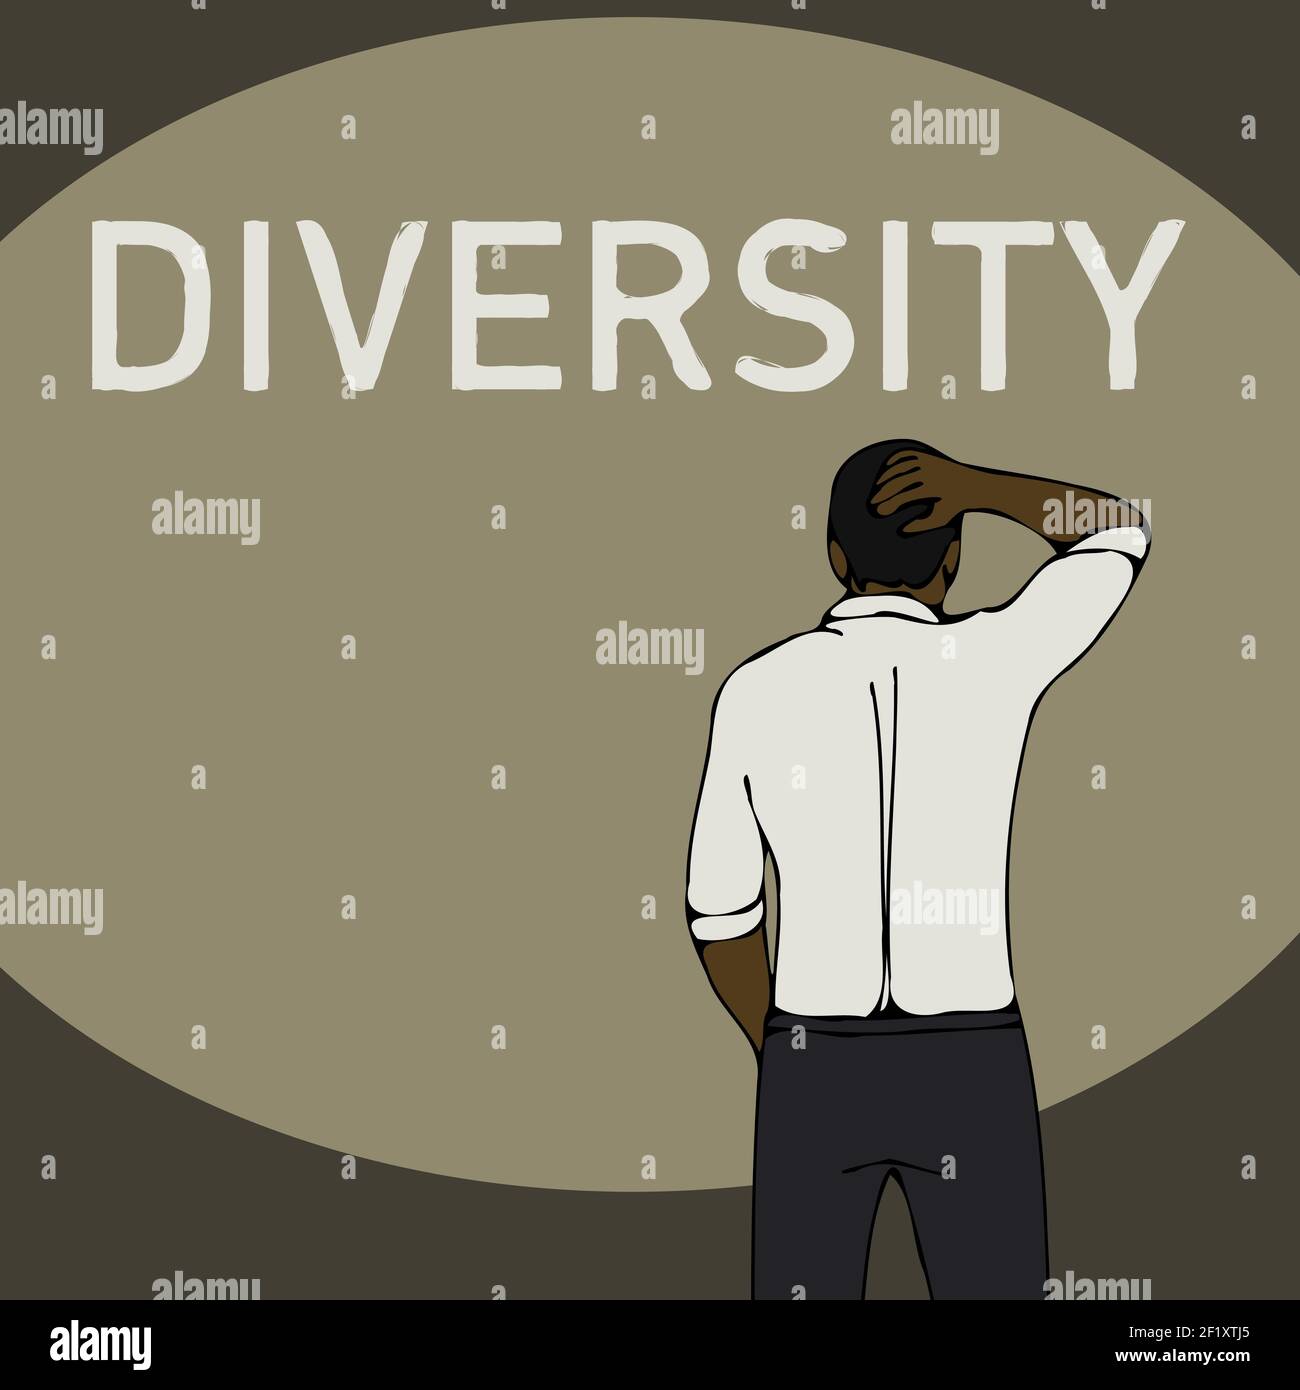 Diversity problem concept black business man Stock Photo